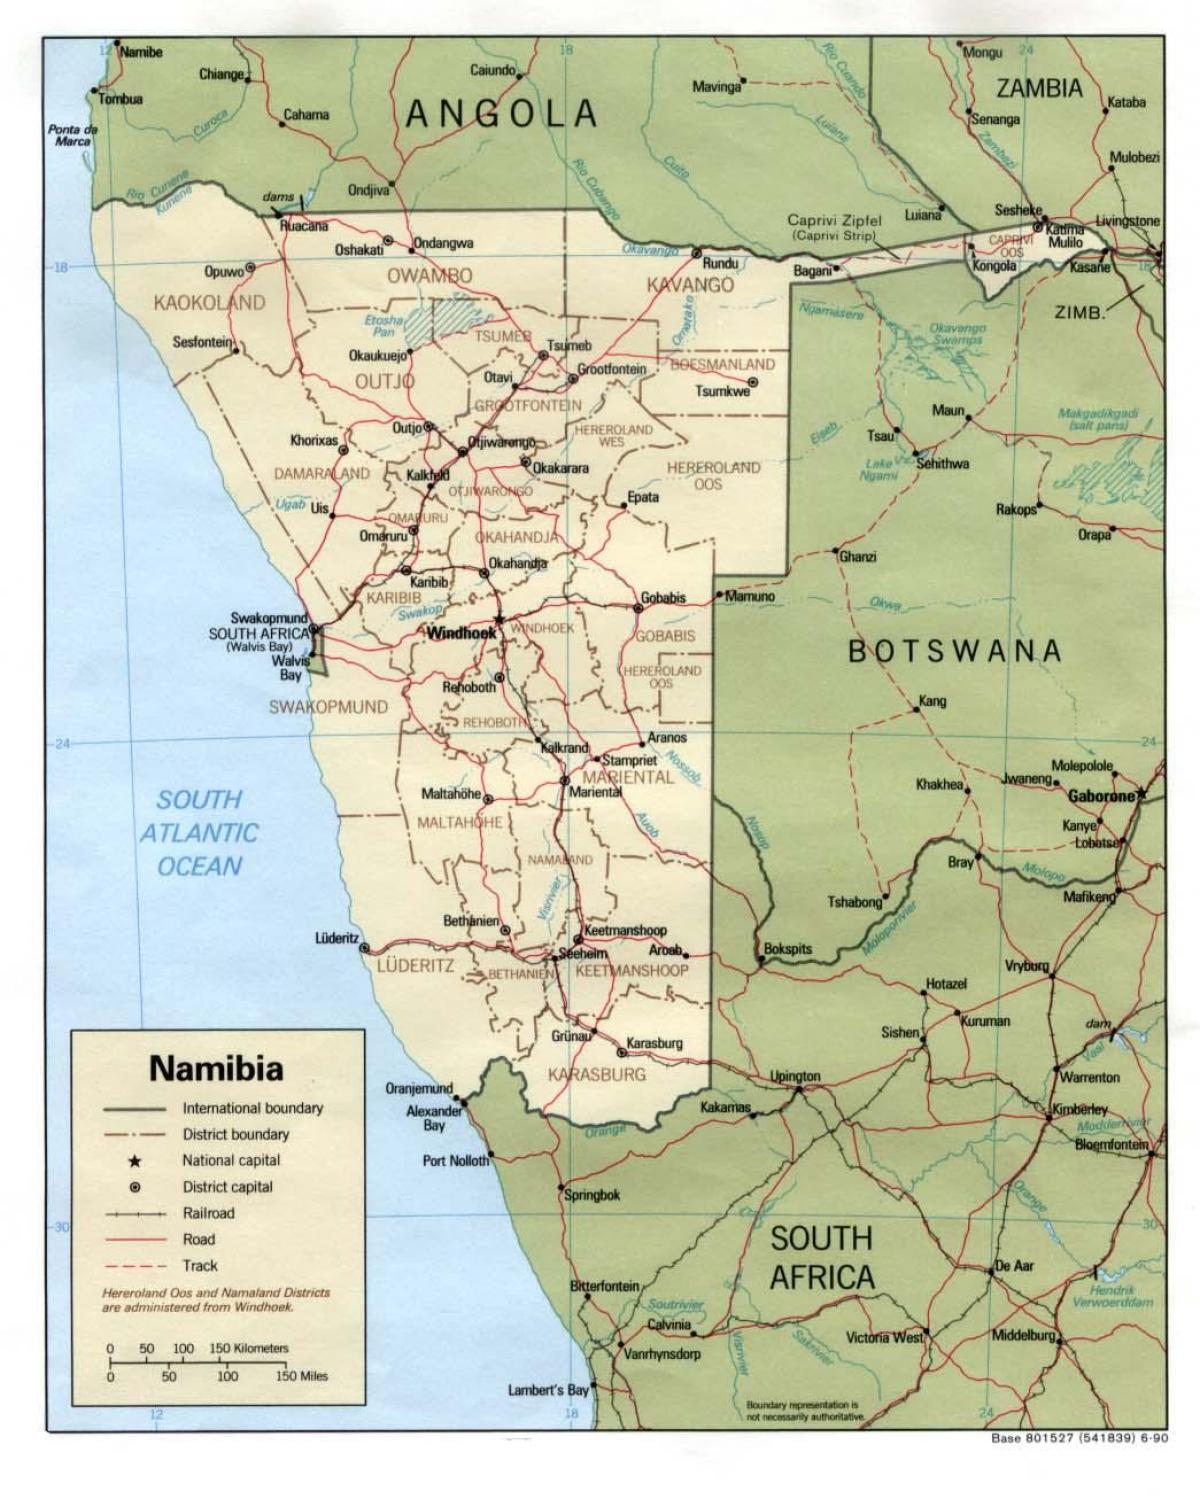 नामीबिया के नक्शे के साथ सभी शहरों